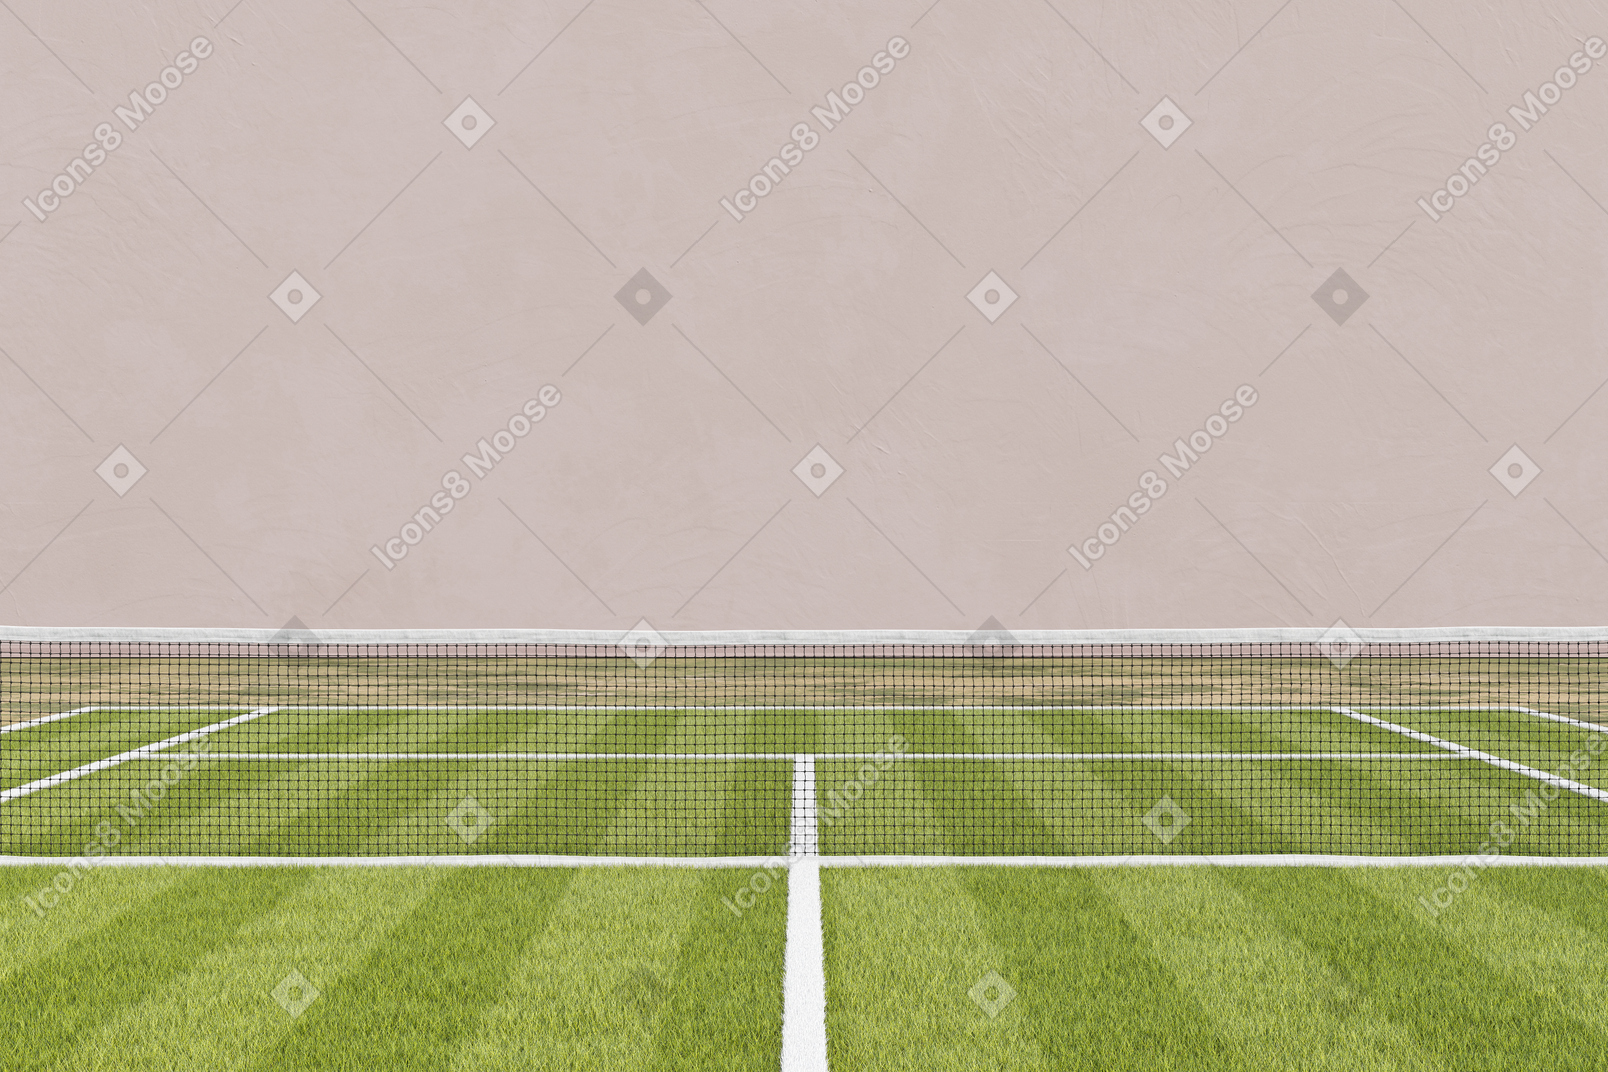 Grass tennis court with a tennis net